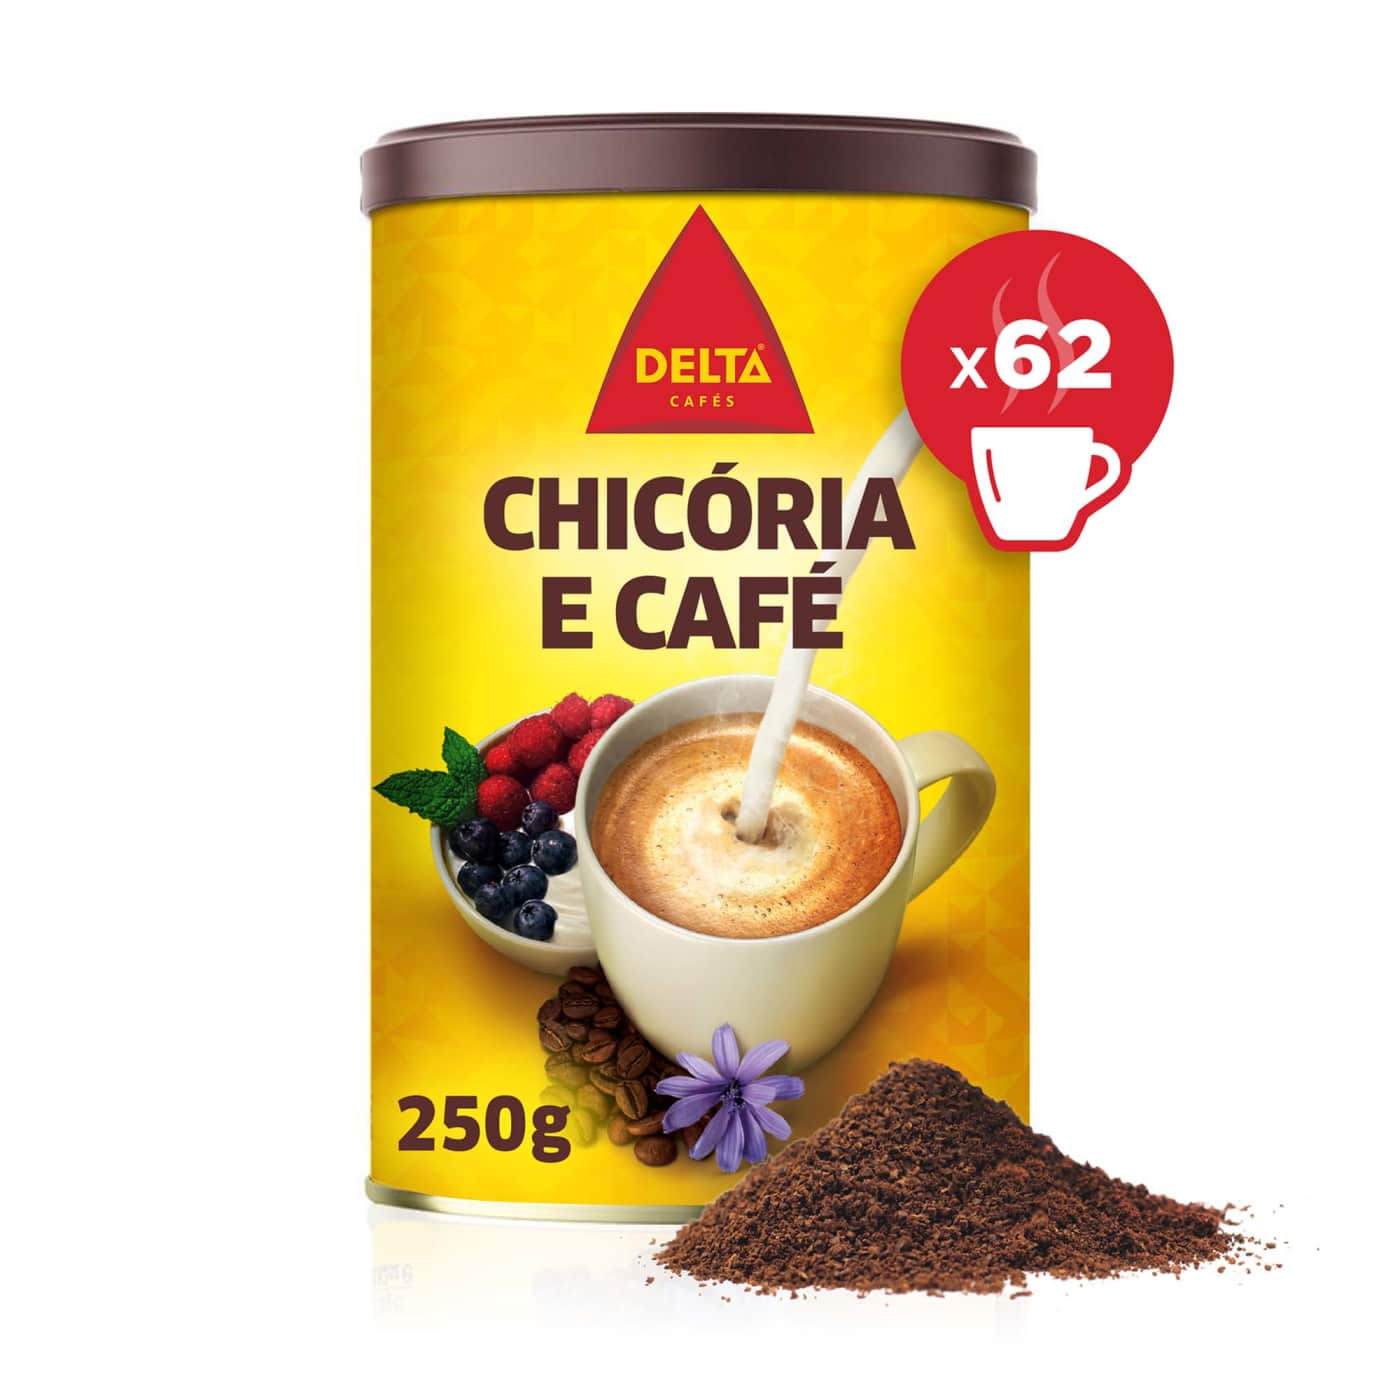 Delta chicoria e café – mélange soluble de chicorée et café – 250g